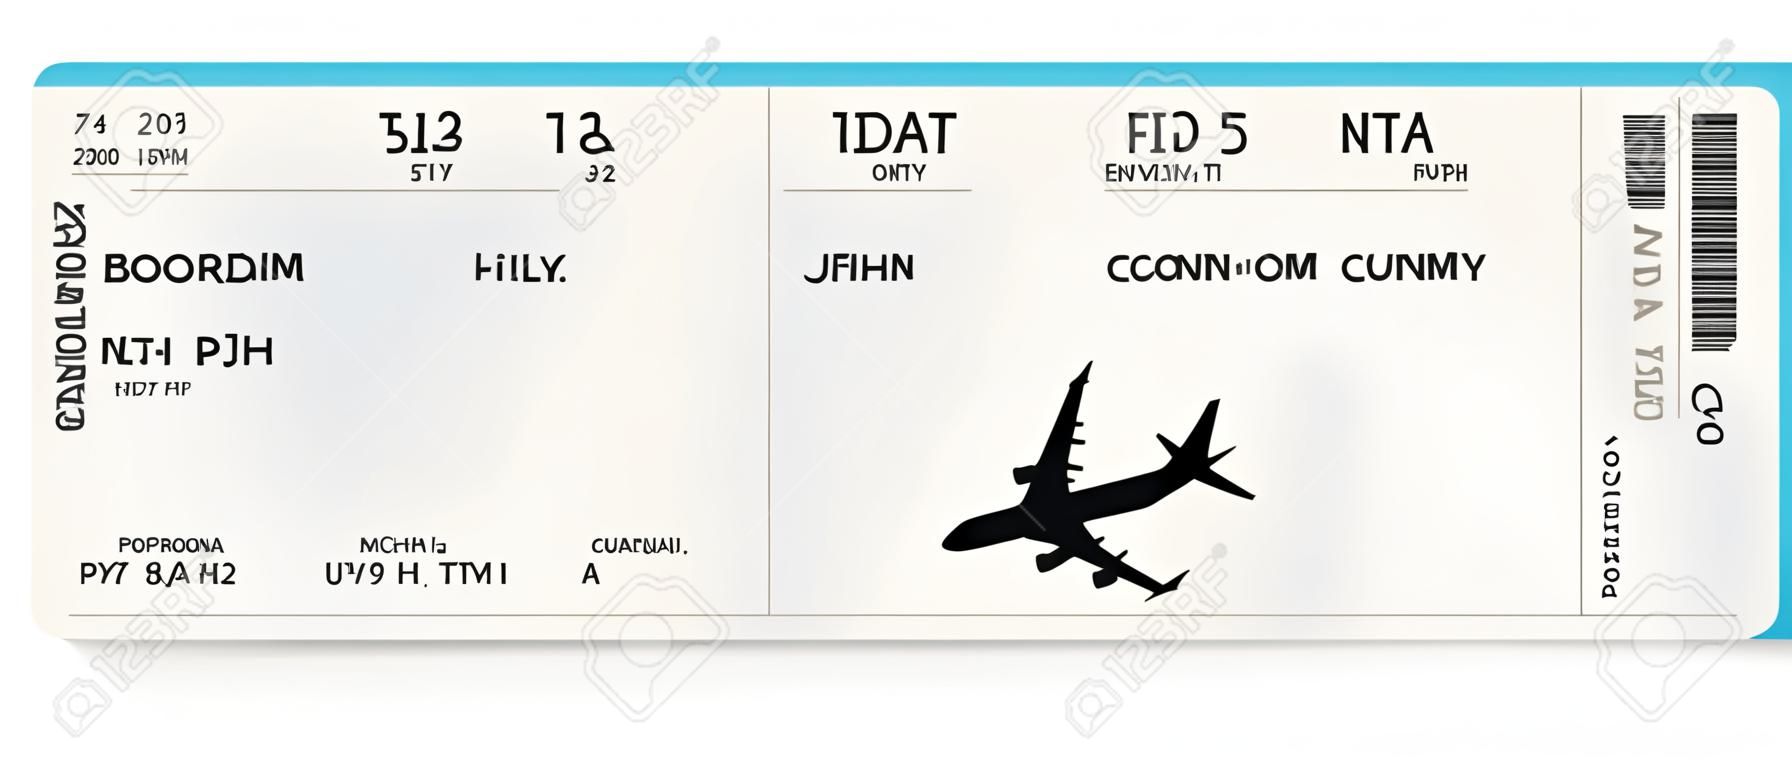 Niebieski realistyczny projekt biletu lotniczego lub karty pokładowej z nierzeczywistym czasem lotu i nazwiskiem pasażera. Ilustracja wektorowa wzoru karty pokładowej